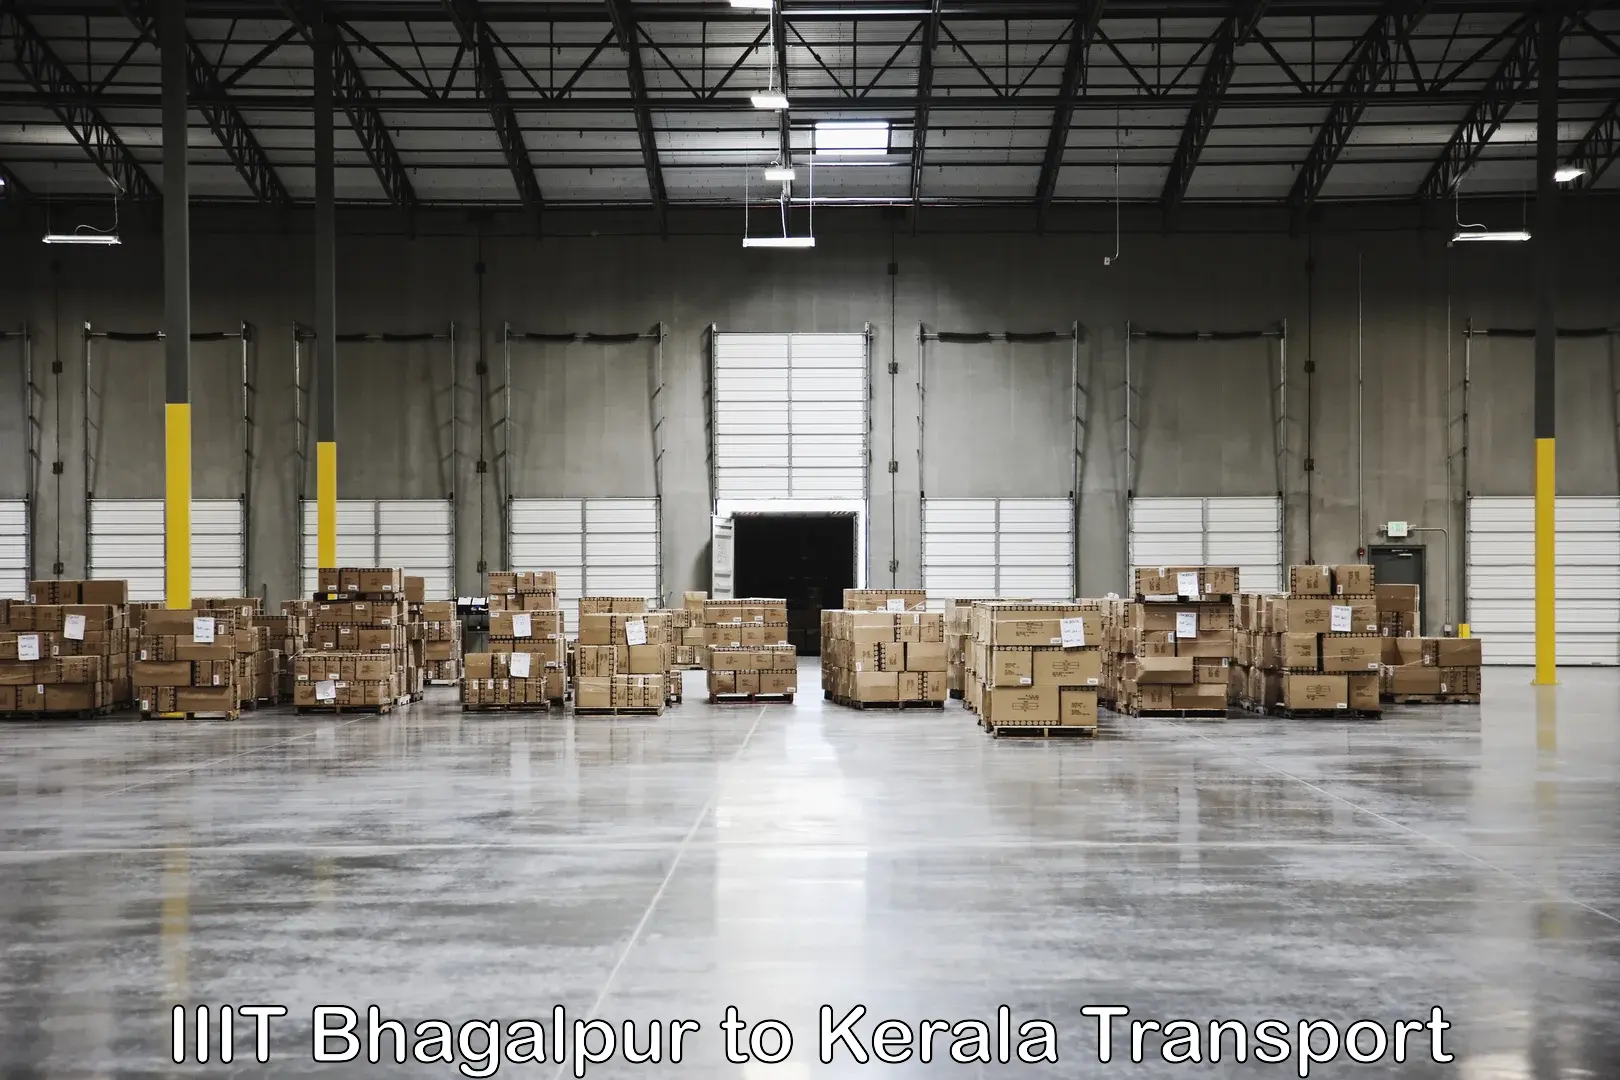 Nearest transport service IIIT Bhagalpur to Kanjiramattom